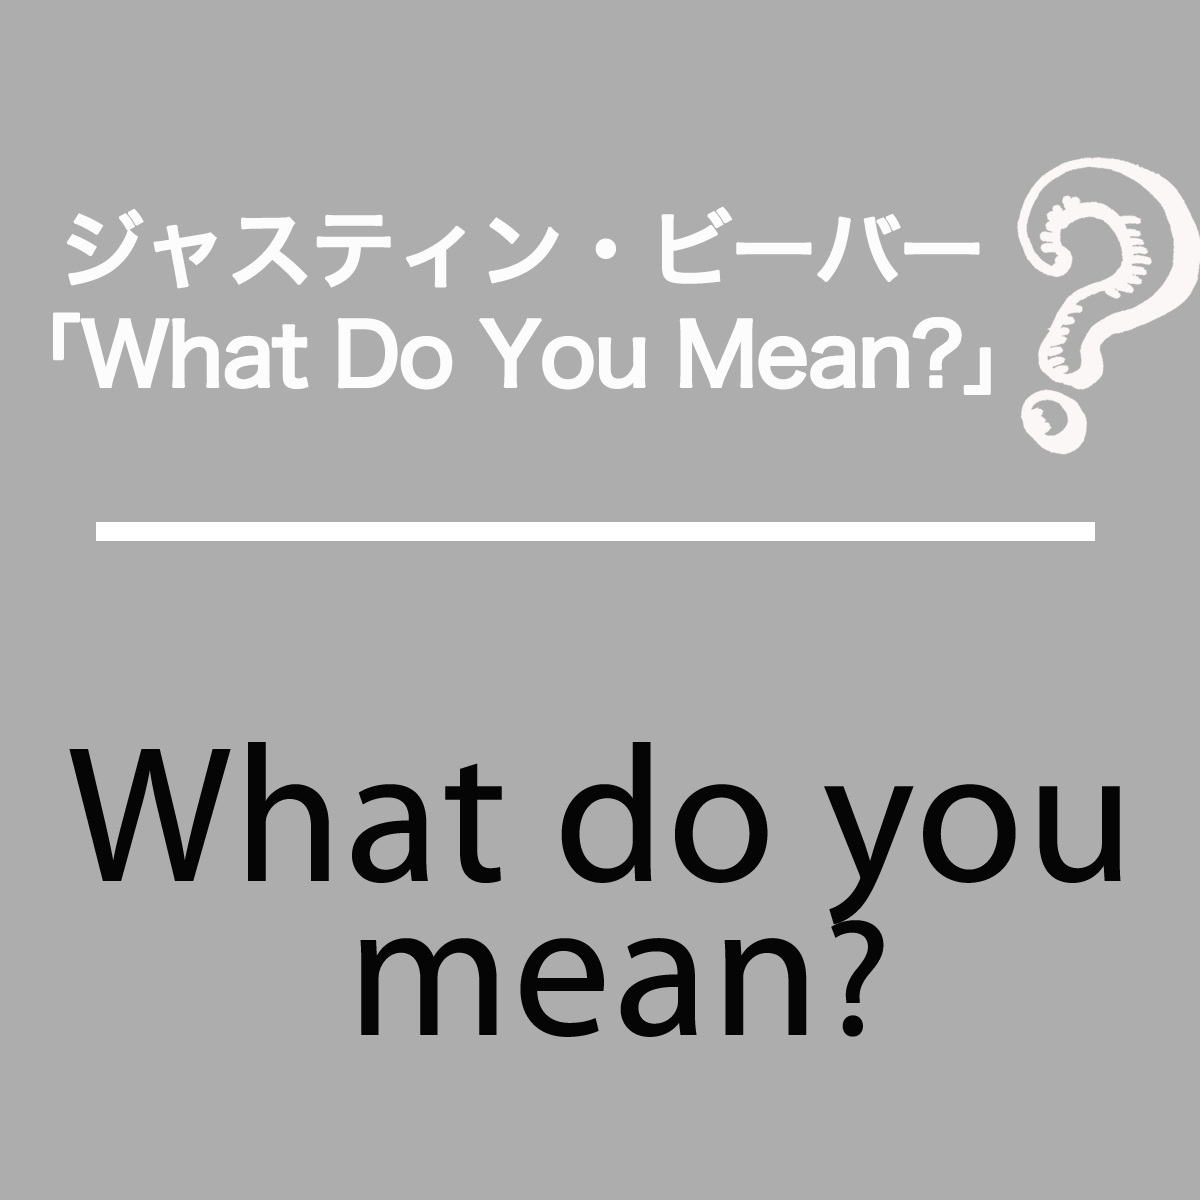 ジャスティン・ビーバー「What Do You Mean?」から学ぶ→What do you mean?